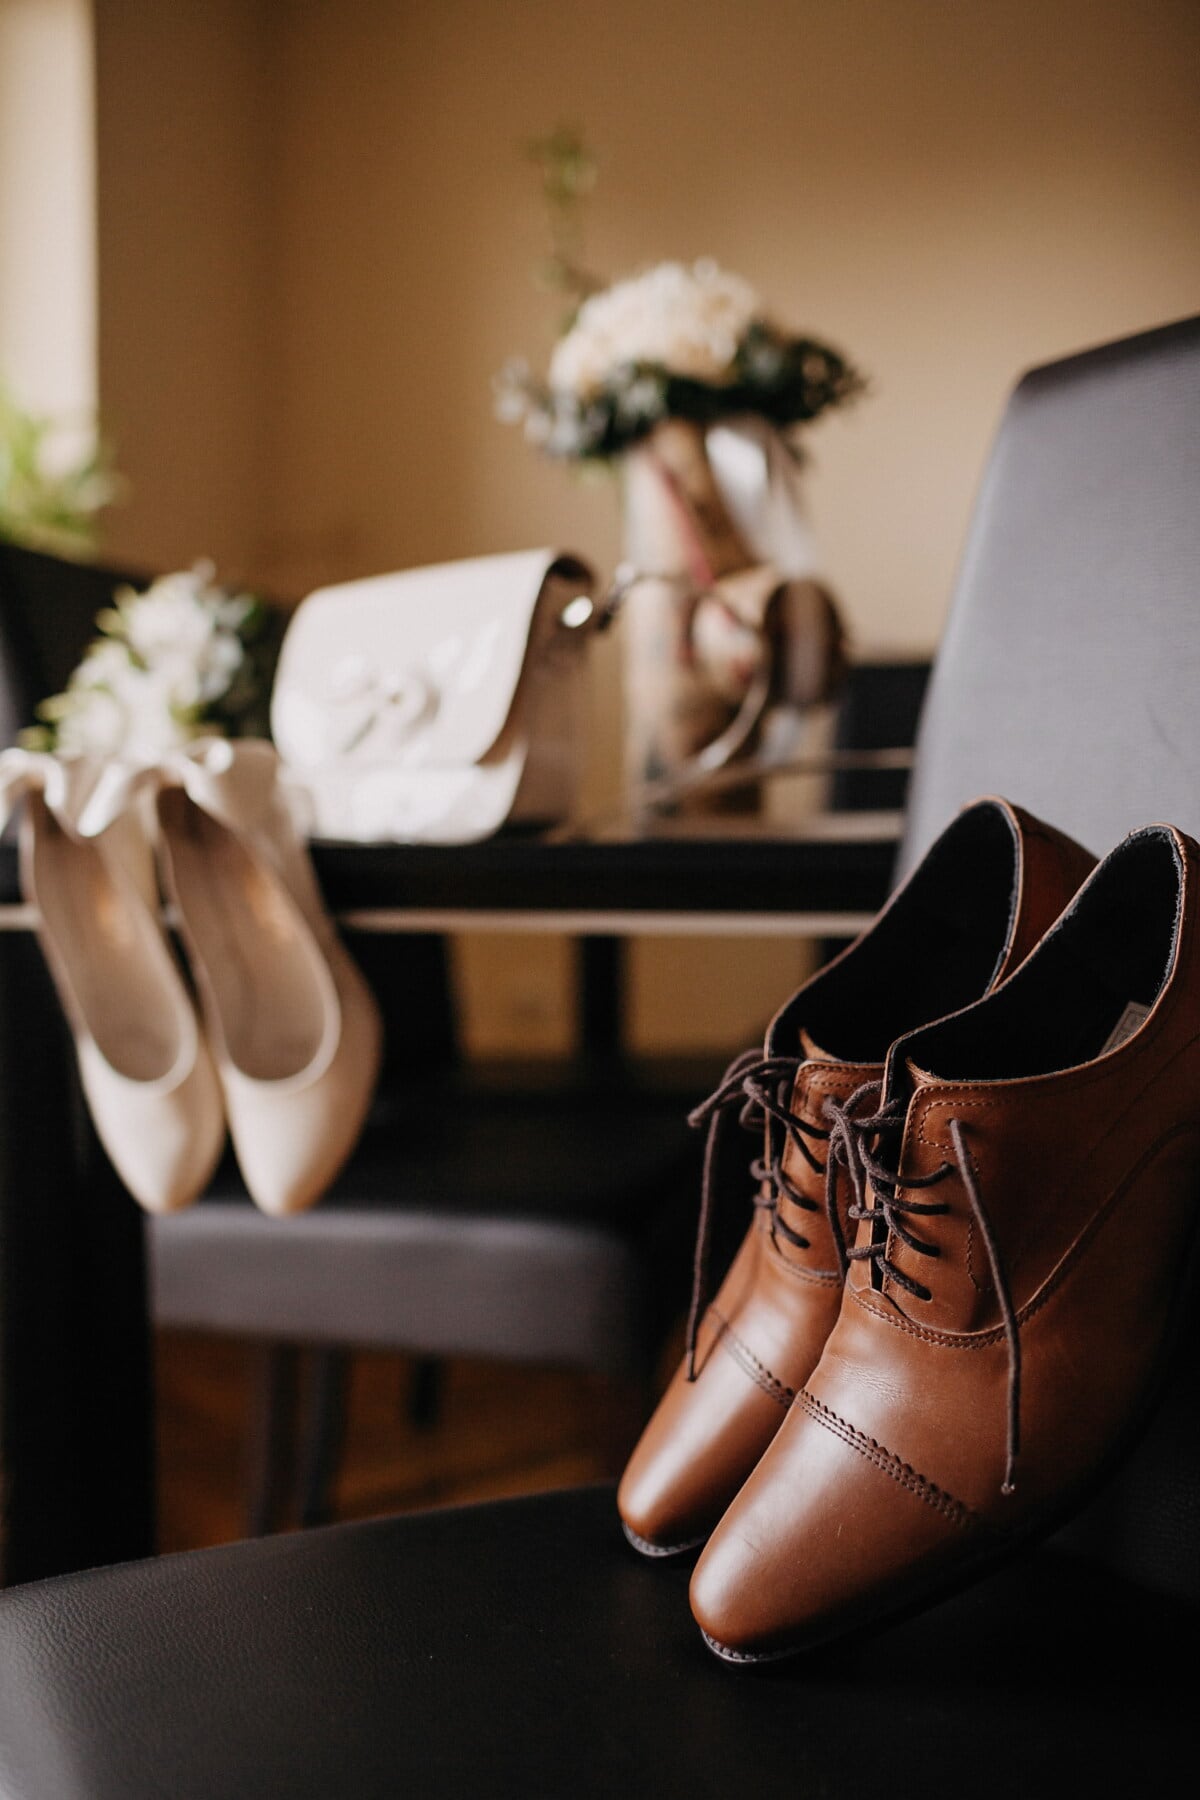 凉鞋, 鞋子, 婚礼, 经典, 休闲, 生活方式, 现代, 鞋, 时尚, 鞋